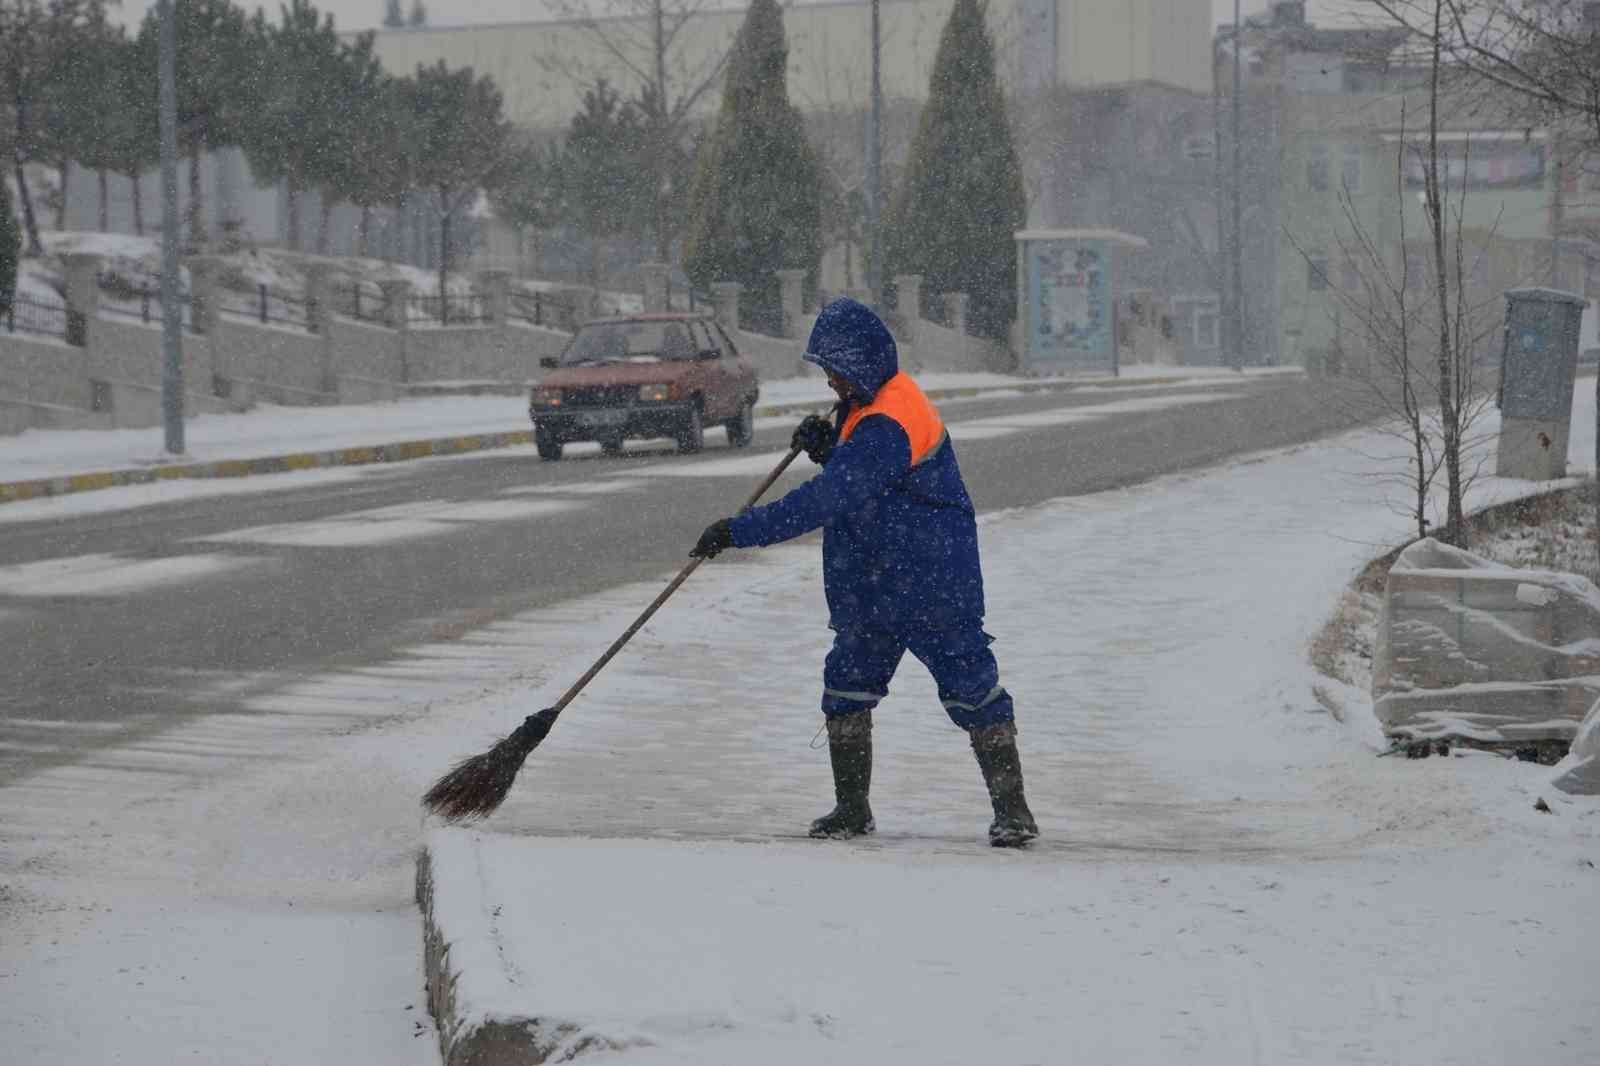 Gediz Belediyesi ekipleri karla mücadele için sahada #kutahya